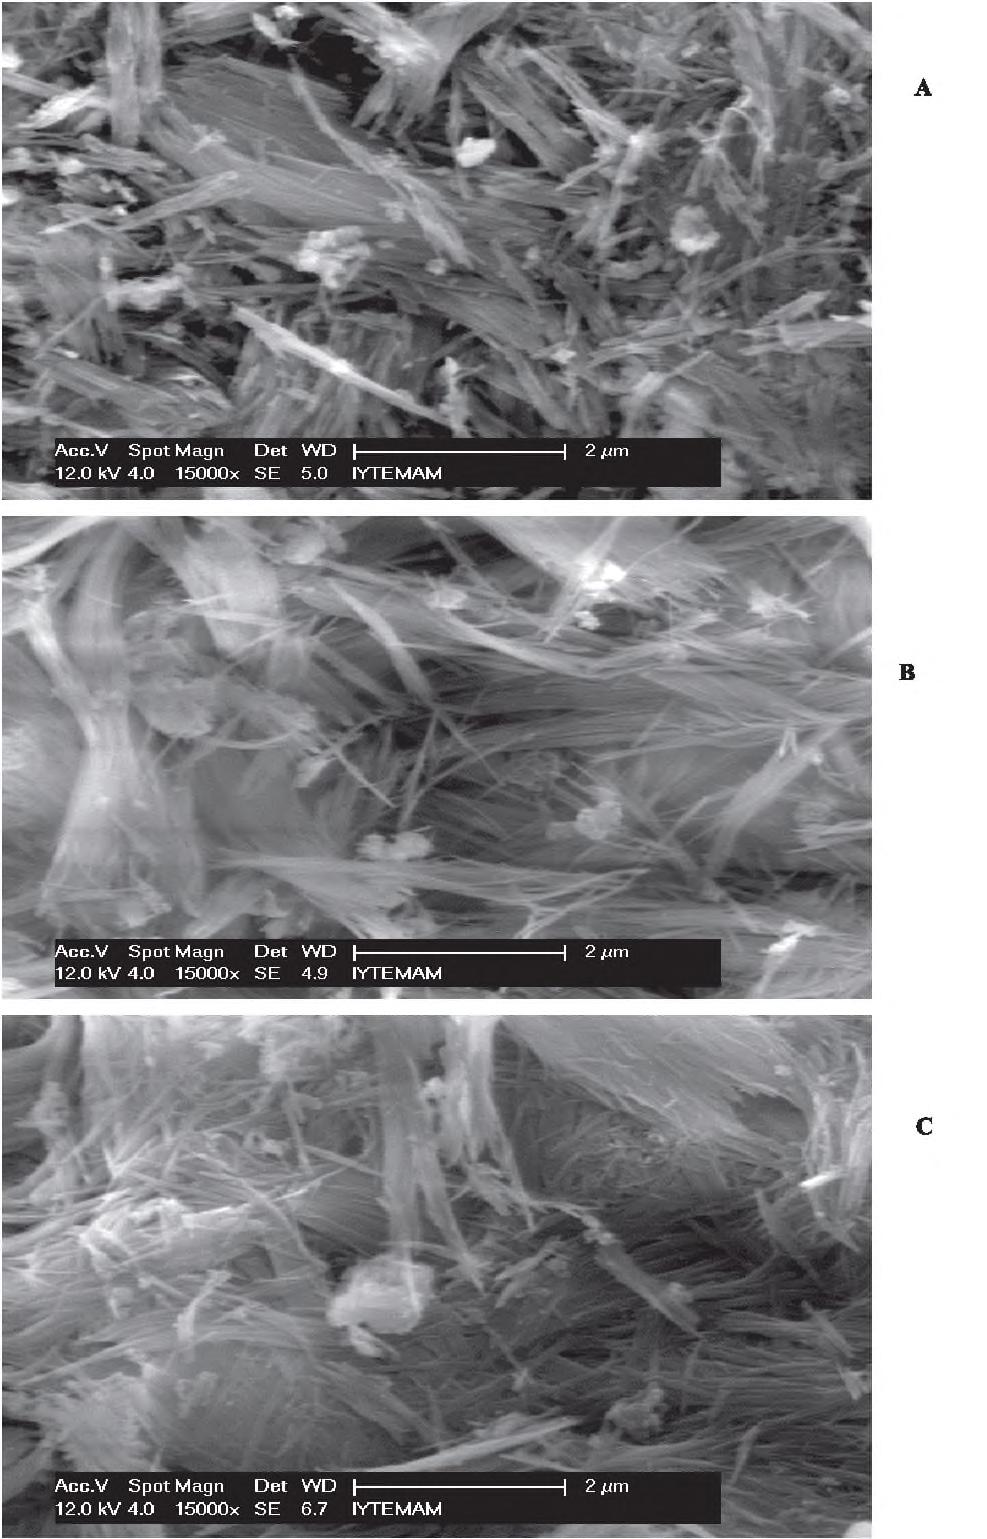 H er üç örneğe ait SEM fotoğrafları incelendiğinde, termal aktivasyona tabi tutulan sepiyolit örneklerinde lifsi yapının belirgin bir şekilde mevcut olduğu ve maksimum yüzey alanına sahip olduğu